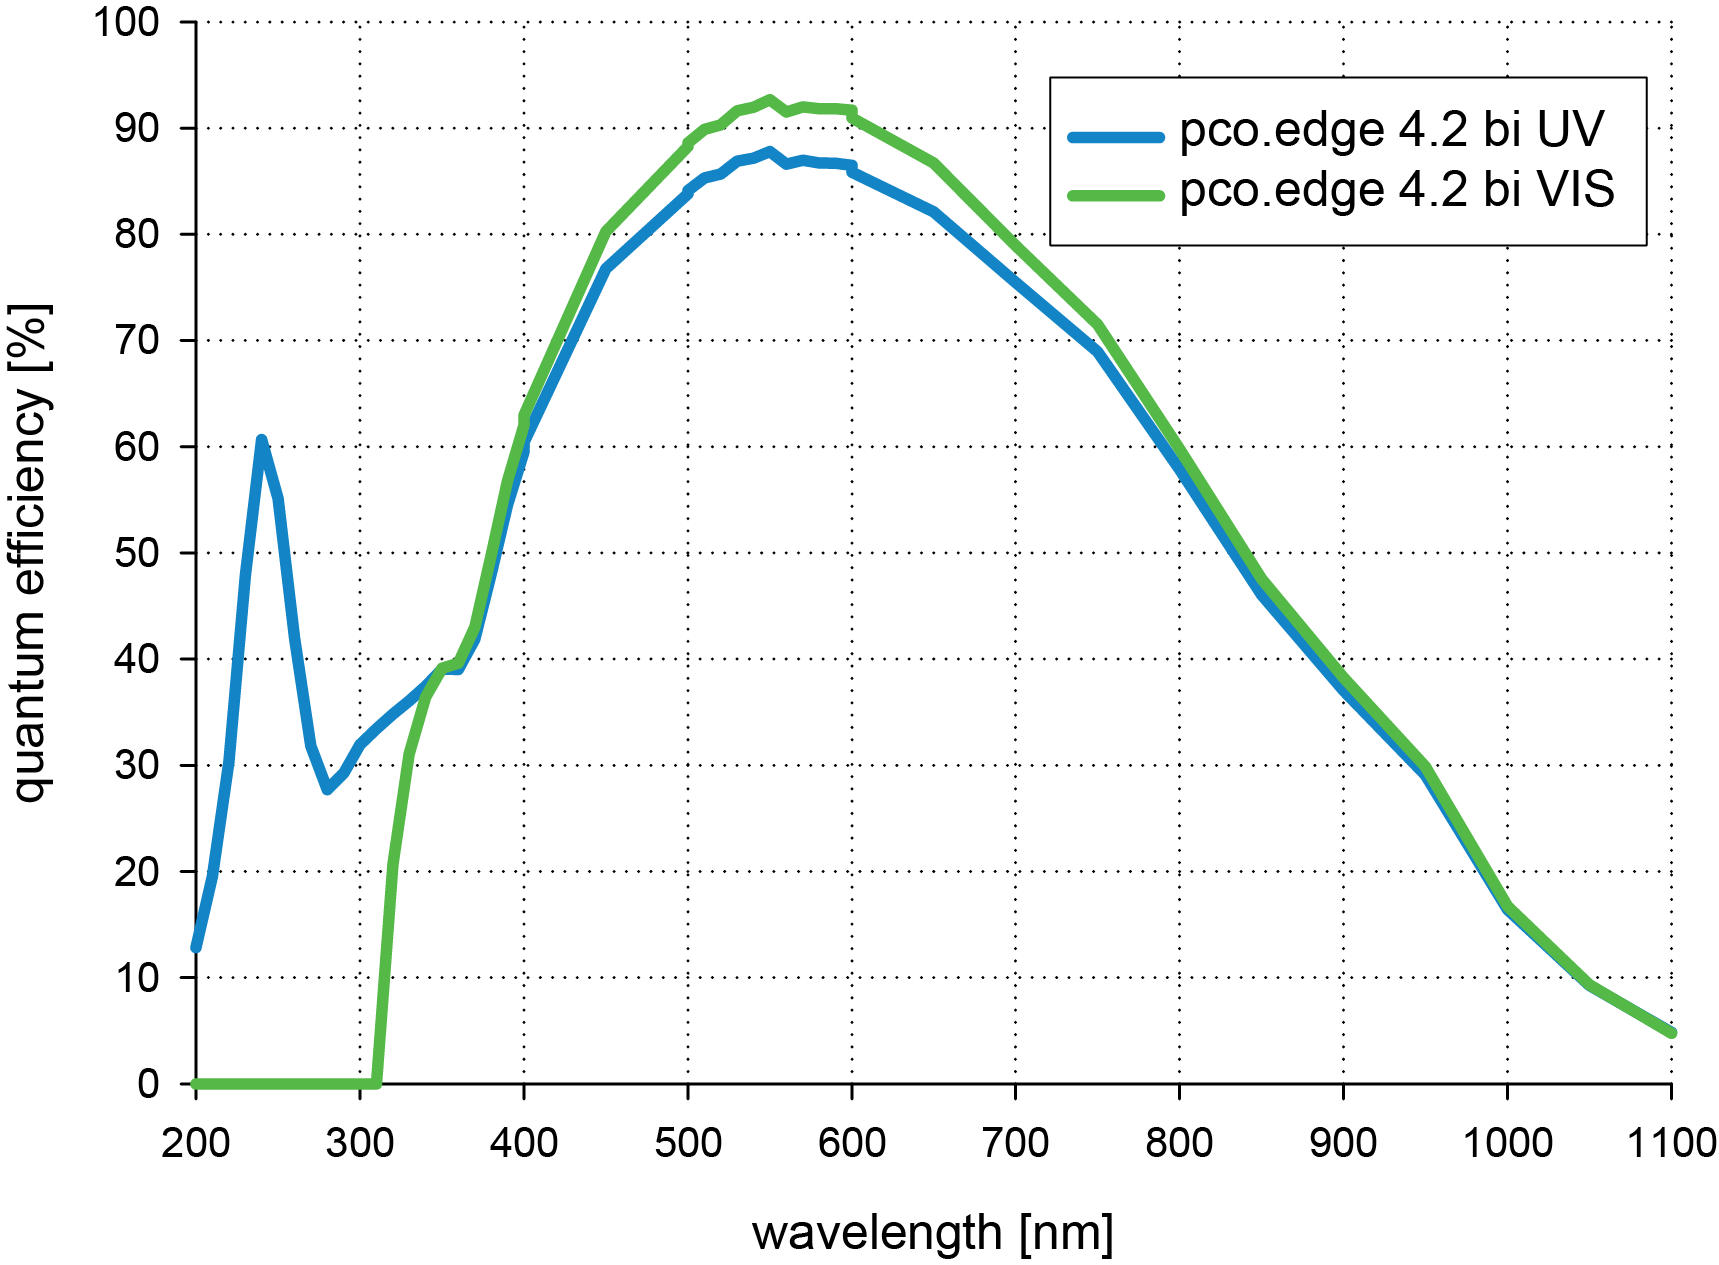 QE curve comparison of pco.edge 4.2 bi uv and vis